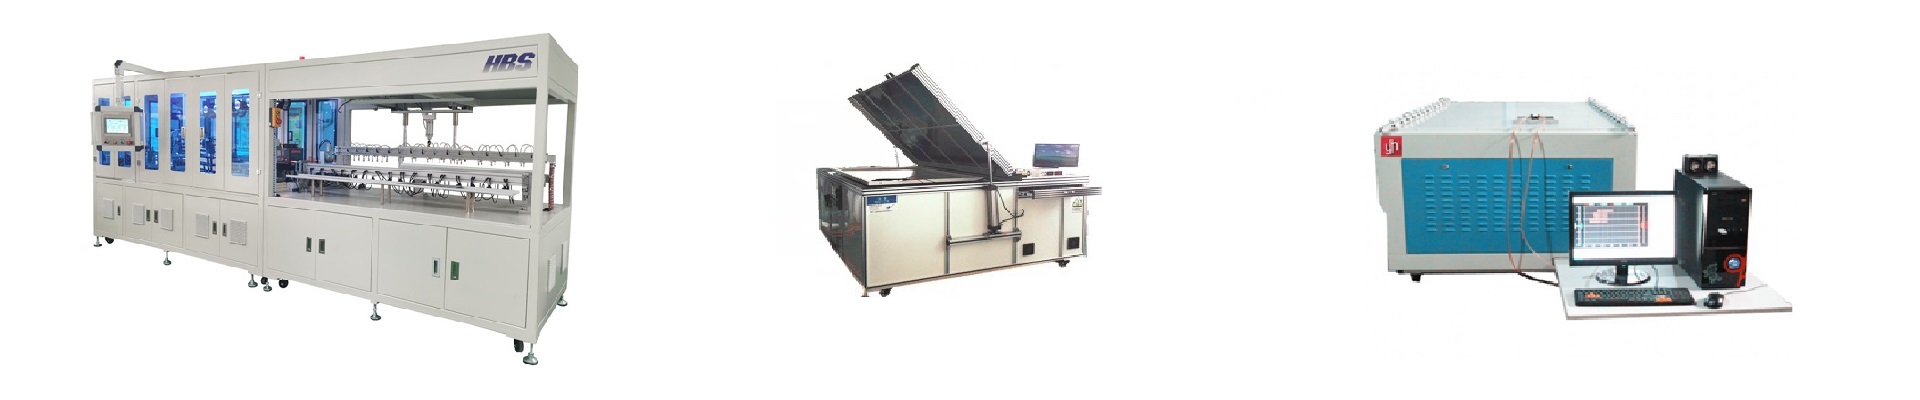 Solar panel manufacturing equipment